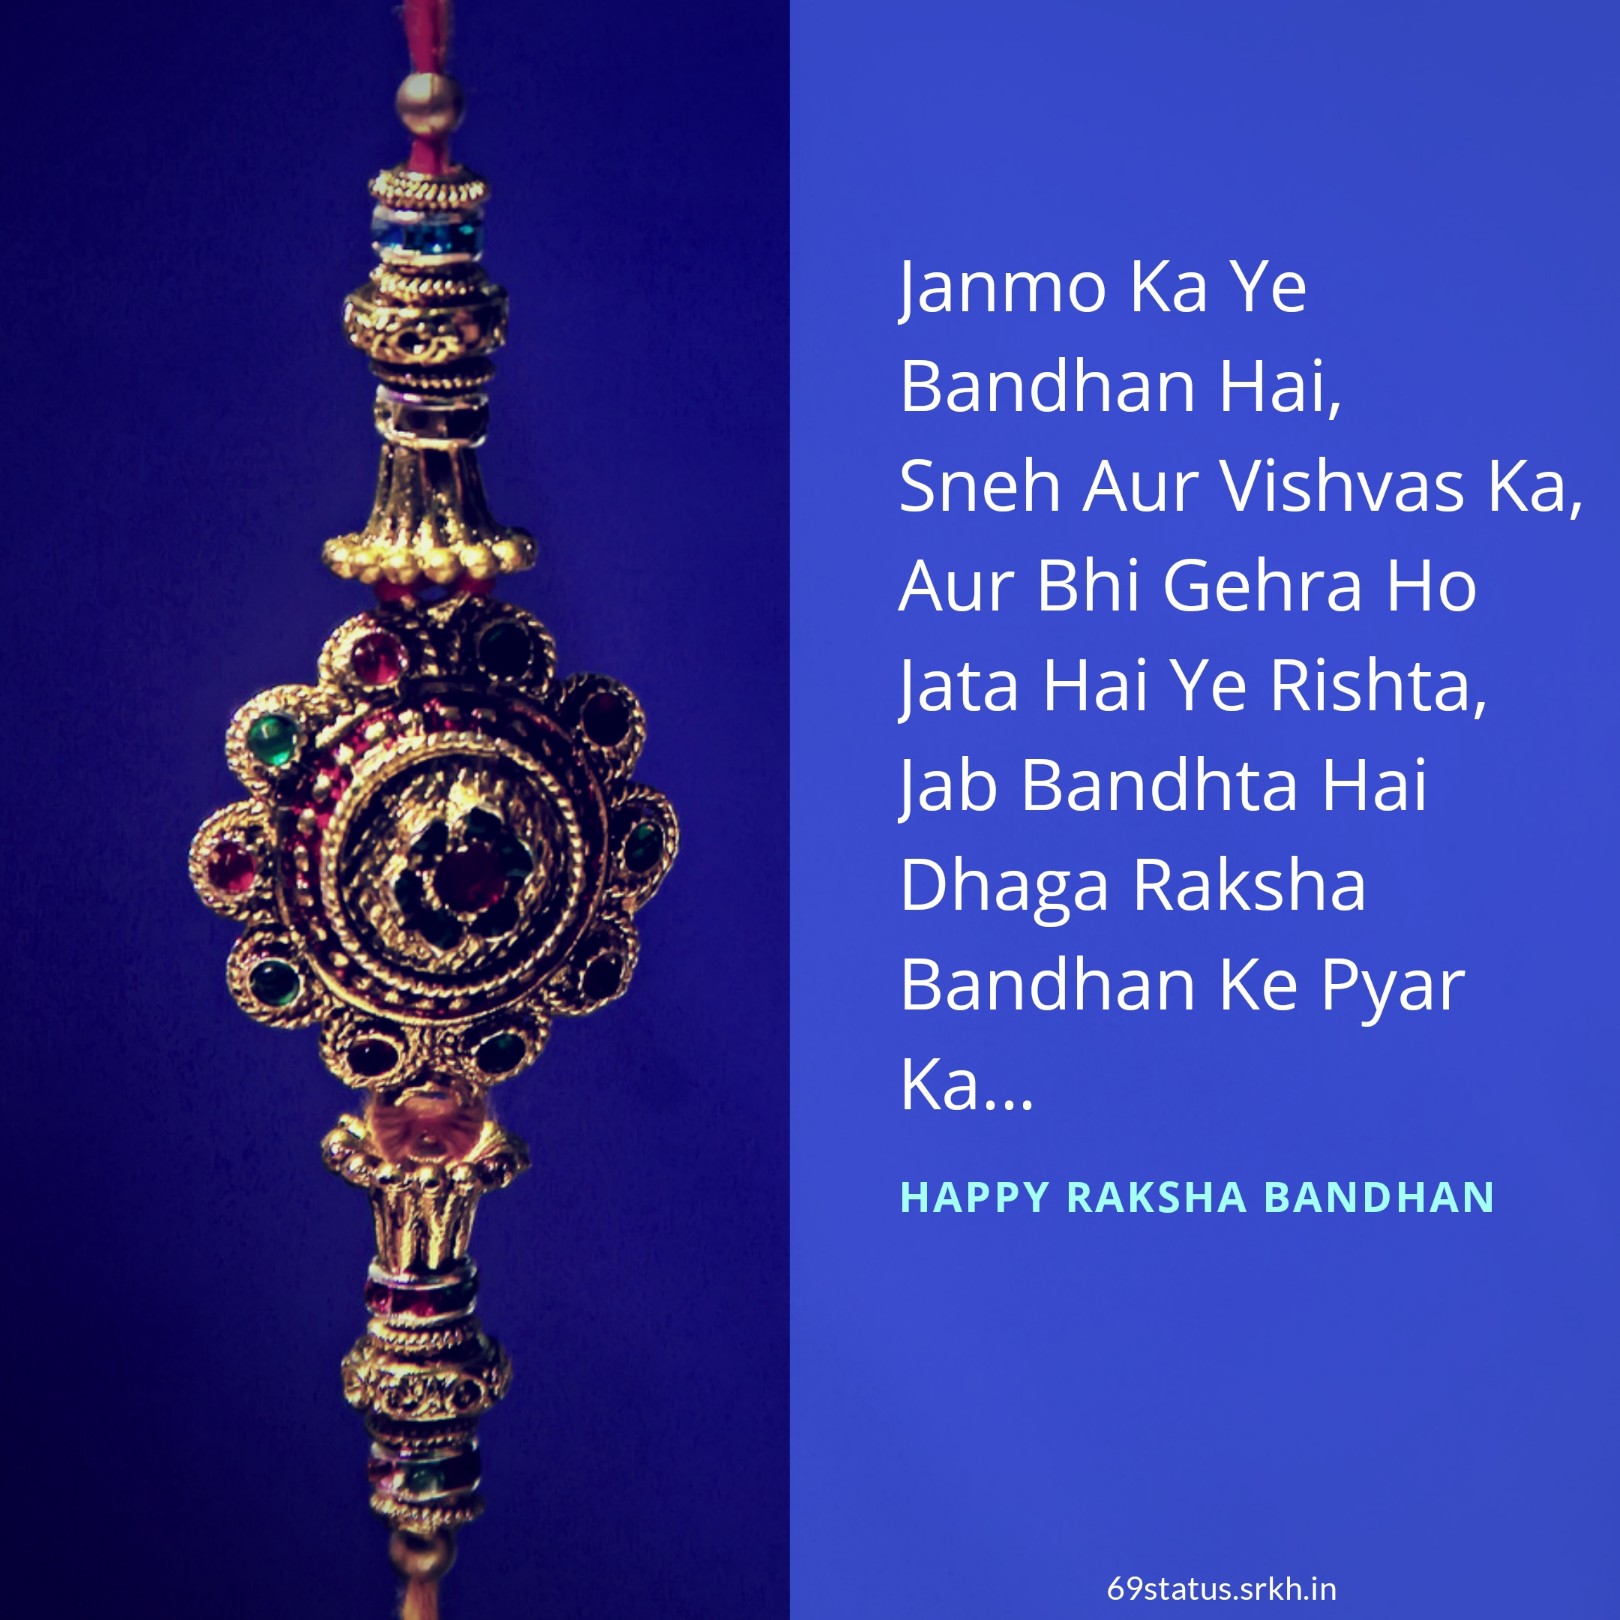 🔥 Happy Raksha Bandhan Shayari Image Download free - Images SRkh